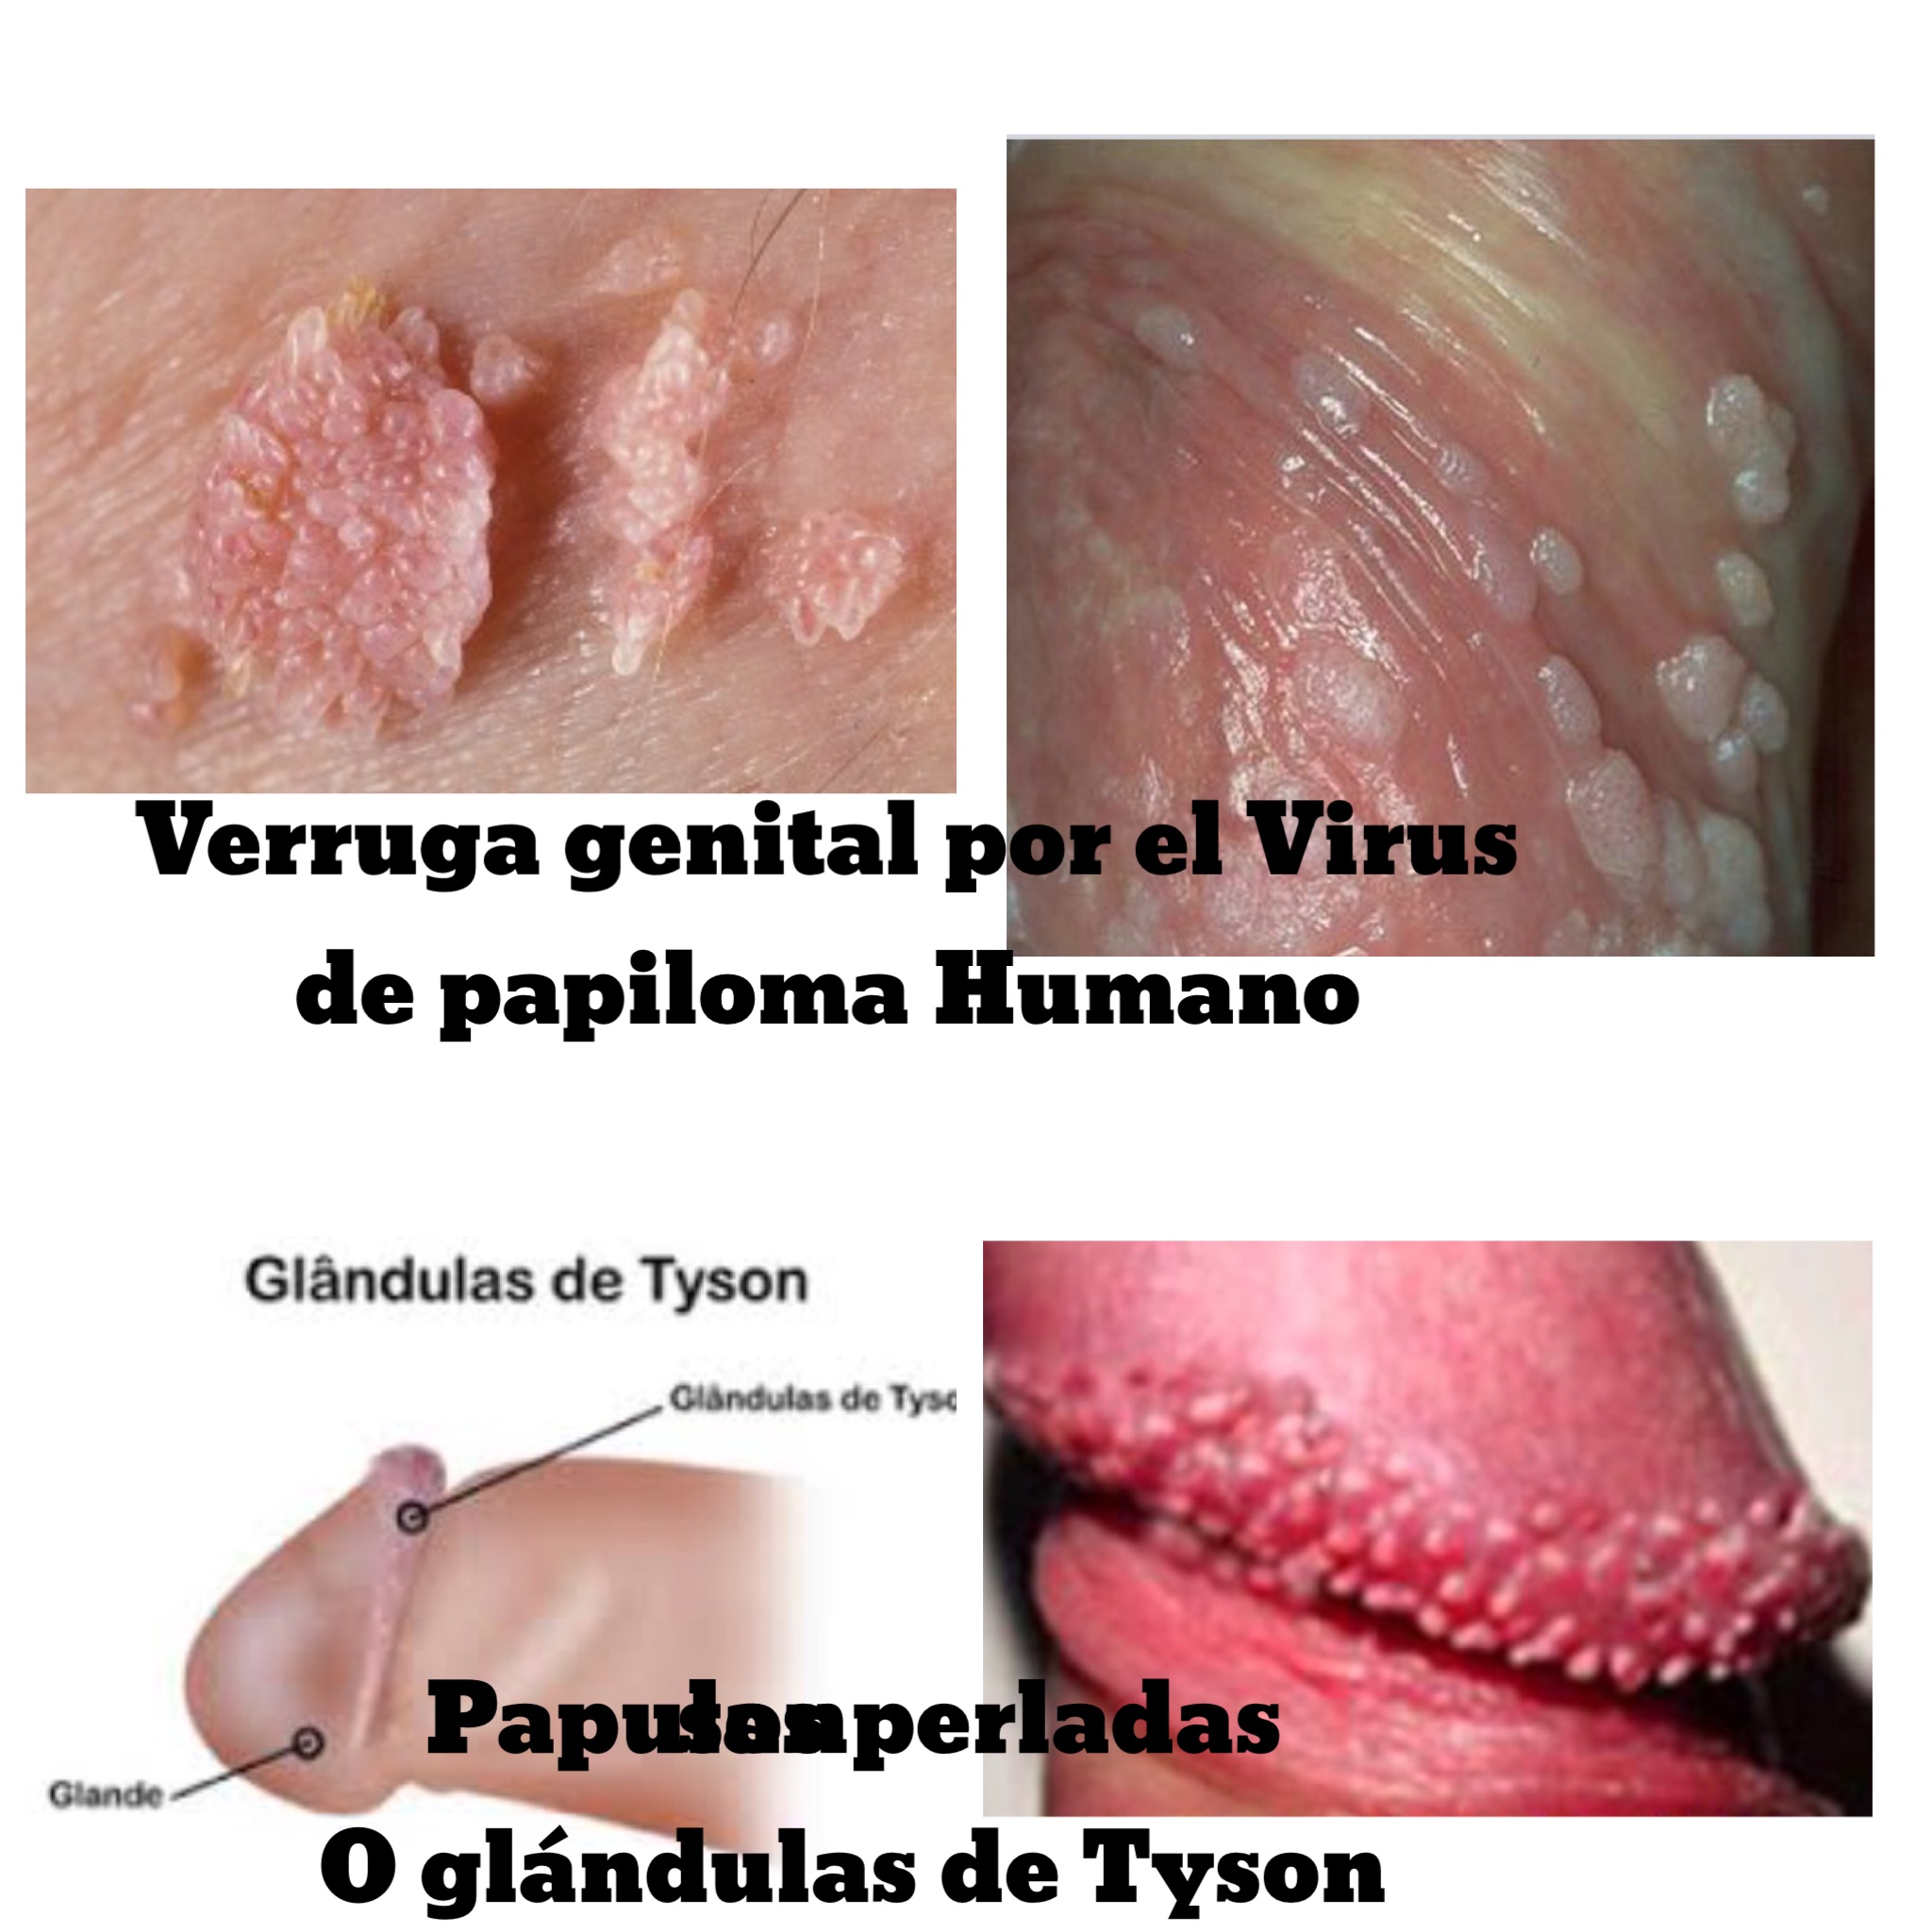 Imagenes virus del papiloma humano verrugas genitales Hpv en hombres imagenes